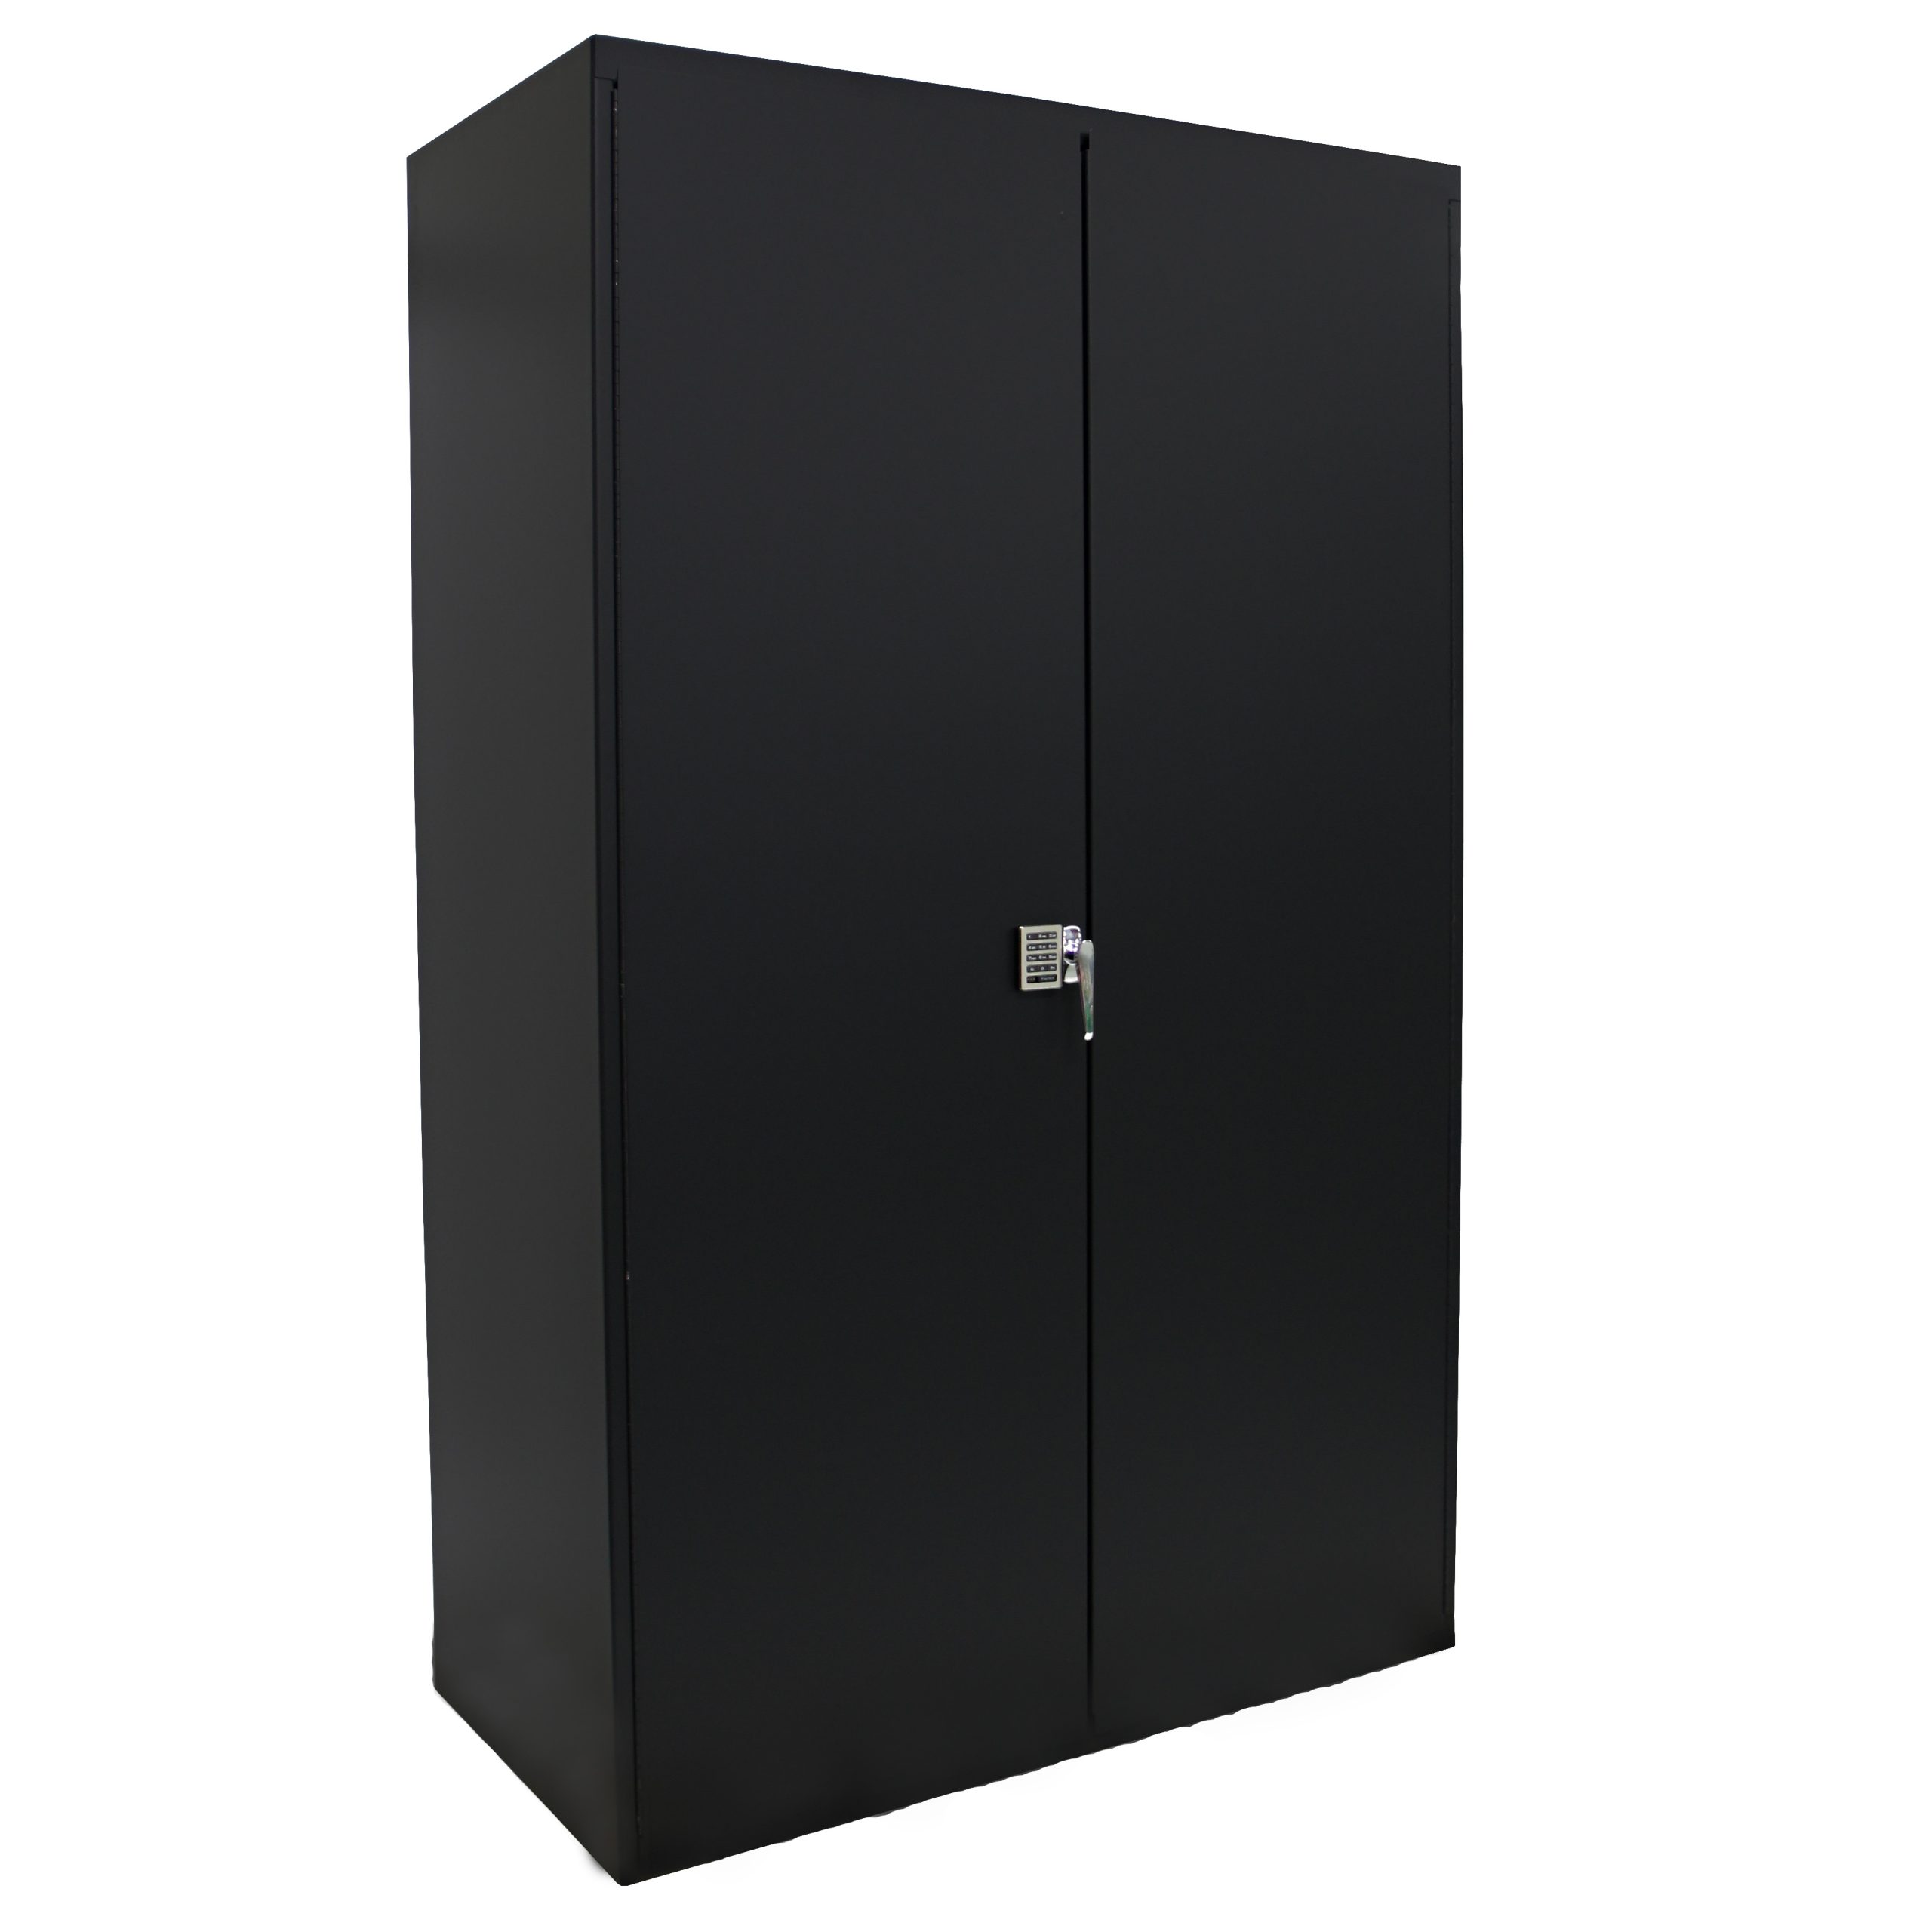 Bin Storage Cabinet With 3 Half-Width Shelves - 48 in. W X 24 in. D X 78  in. H